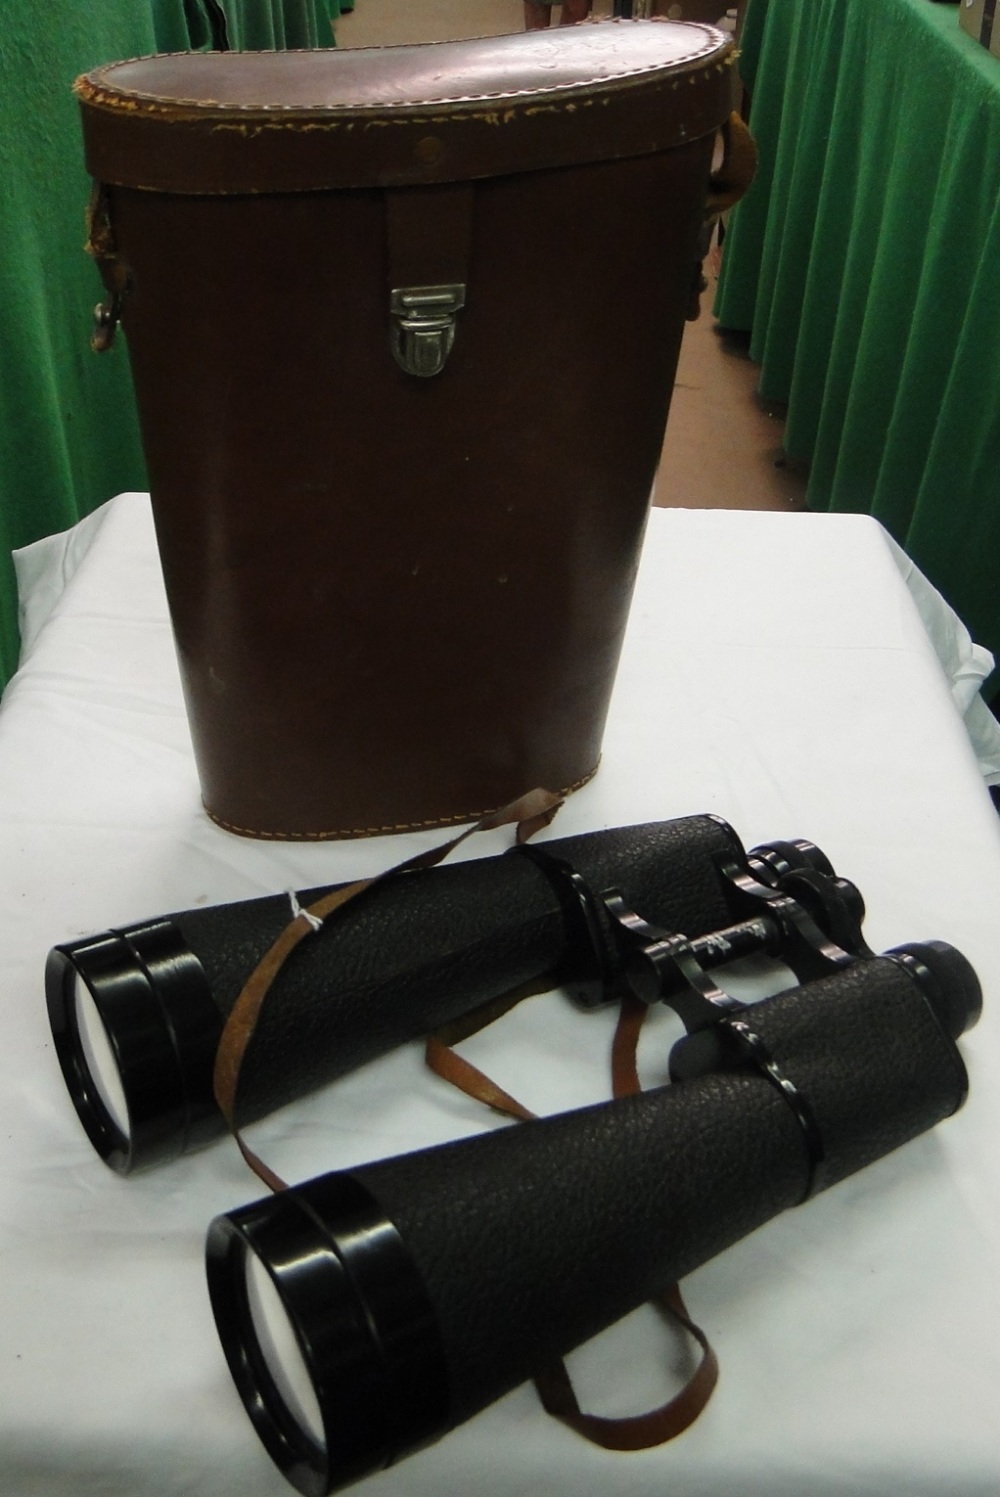 Denhill Range Master 35 x 16 binoculars with case.